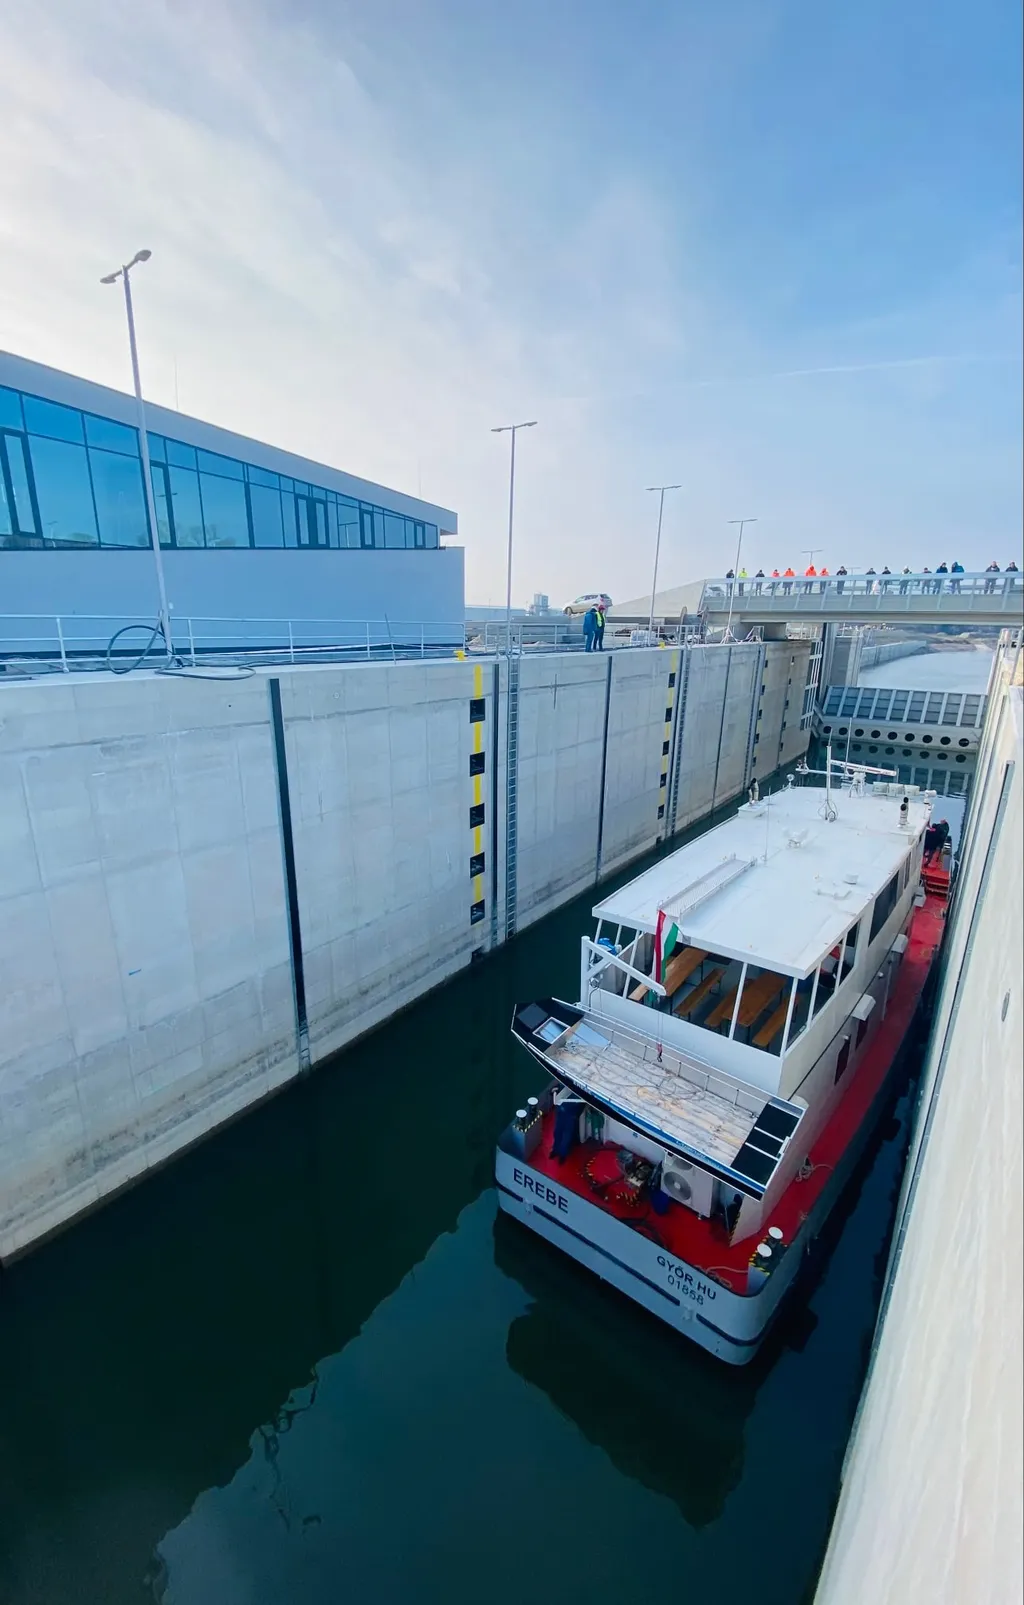 átkelt az első hajó a Mosoni-Duna vízszintjét helyreállító projektben épült zsilipen, Észak-dunántúli Vízügyi Igazgatóság, 2022.01.27-i történelmi pillanat 